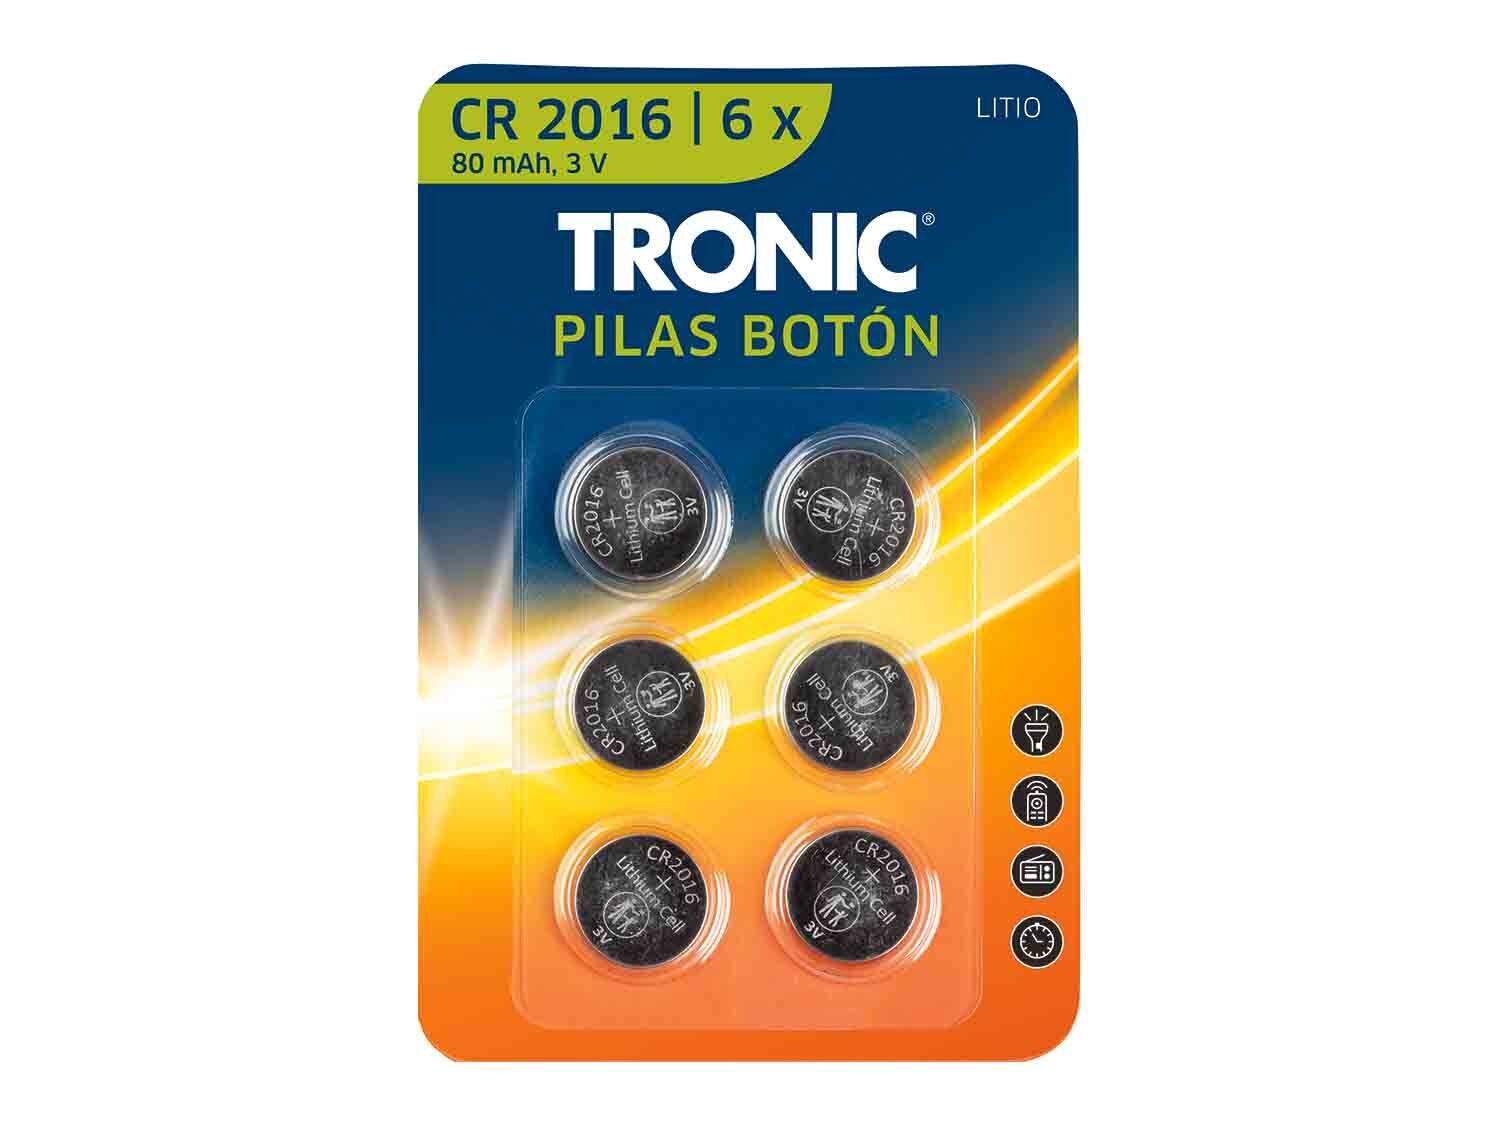 Tronic® Pilas botón